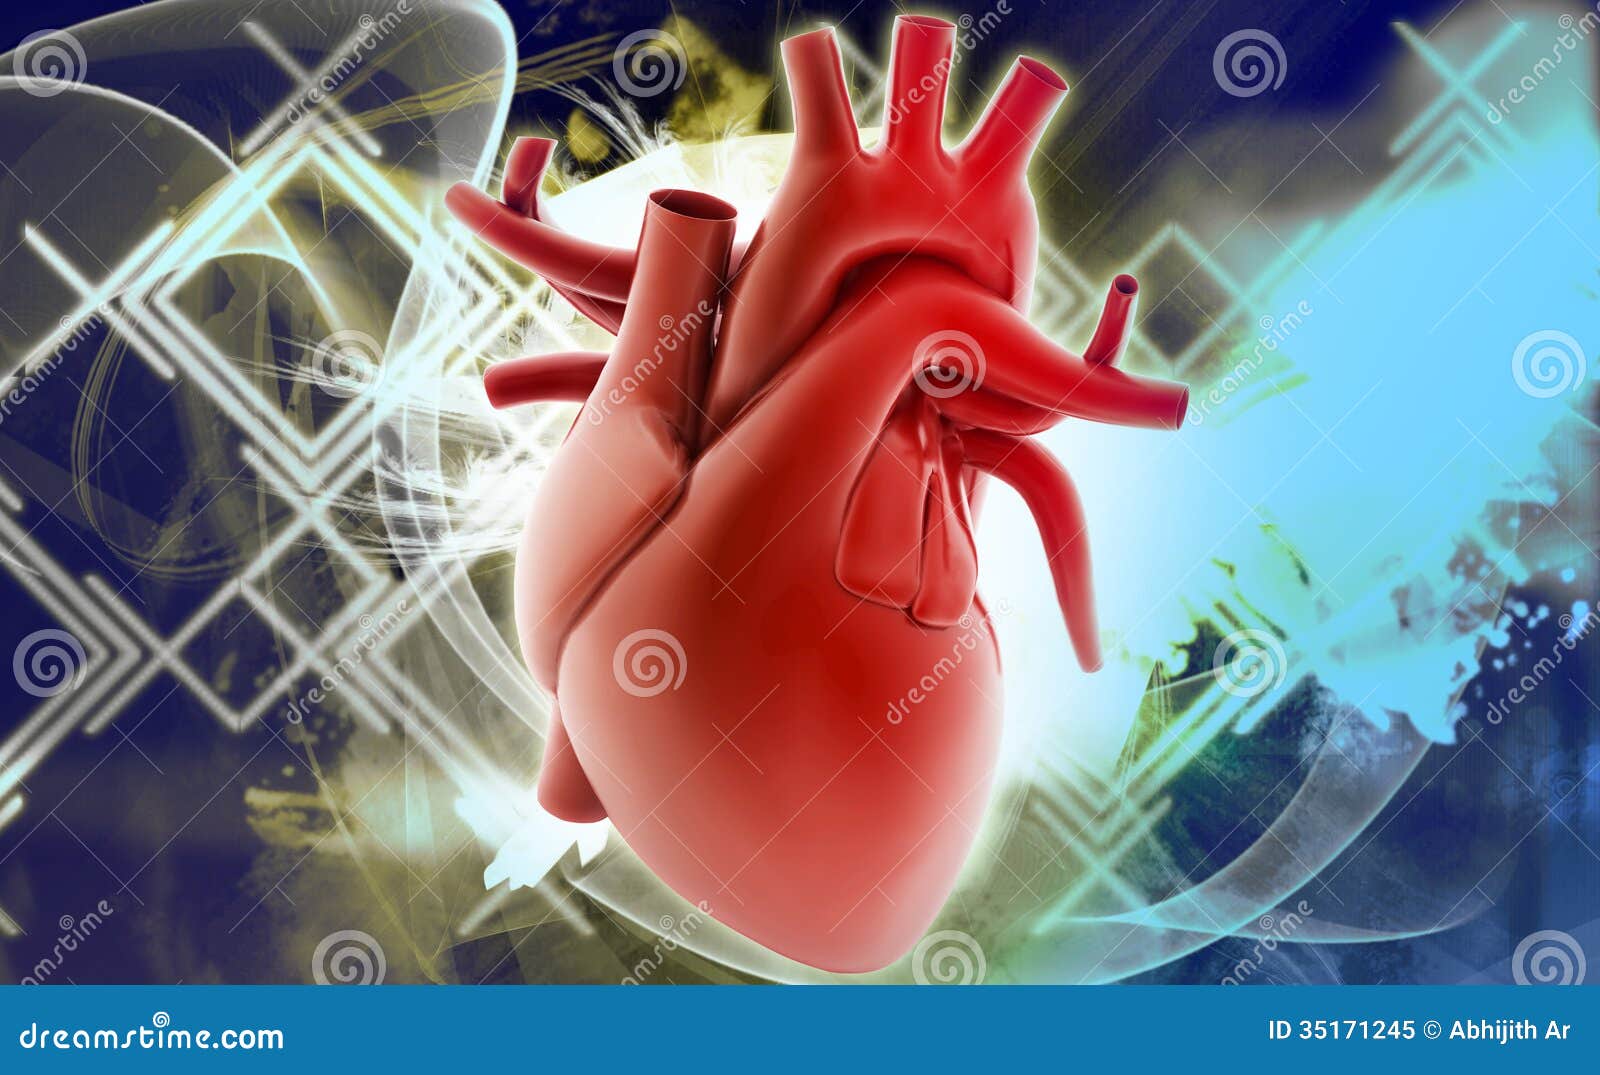 第四节 心脏的间隔与室上嵴-心血管-医学